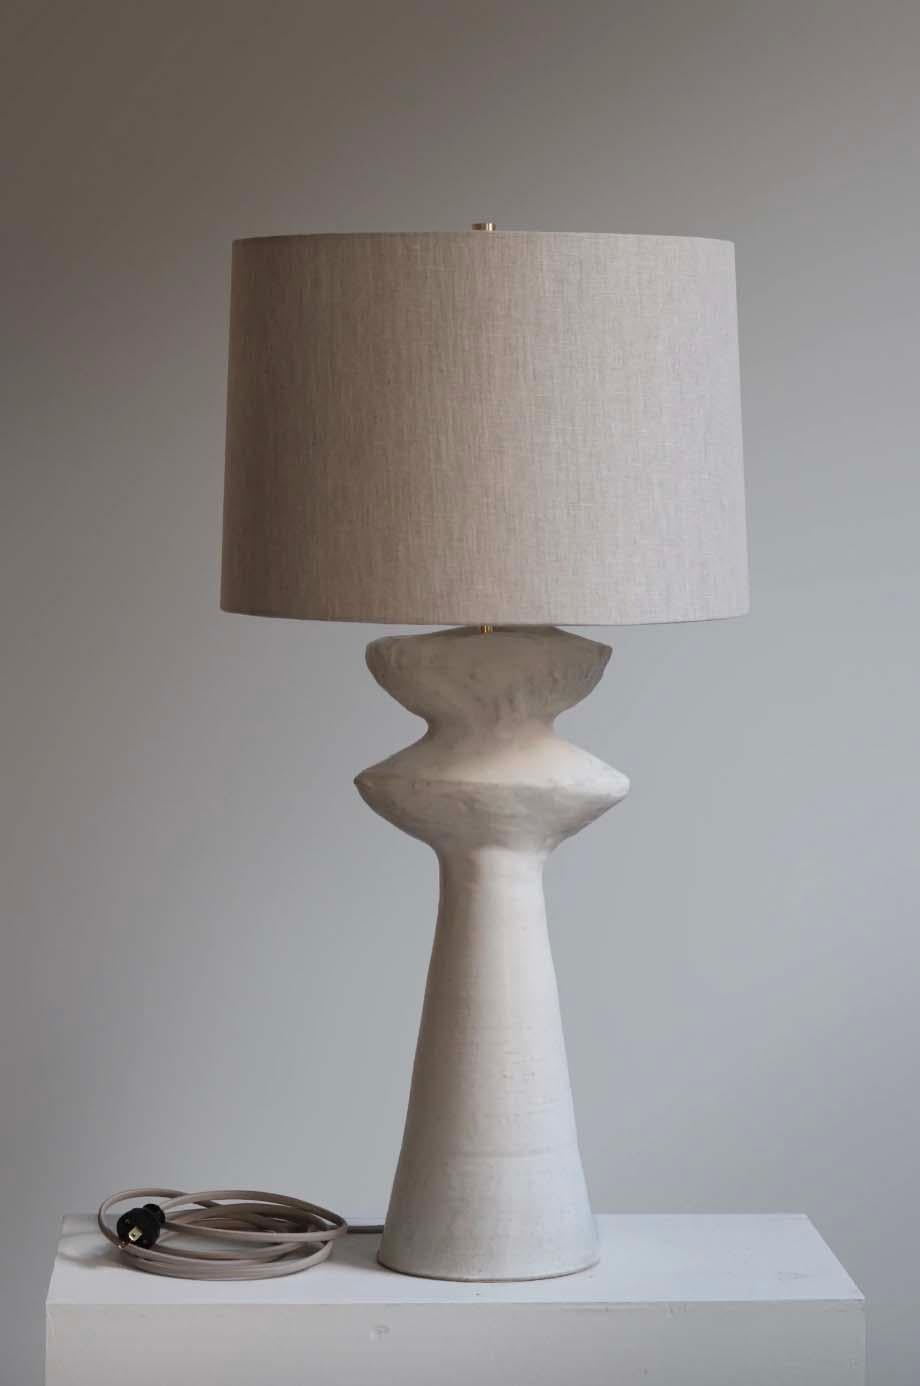 La lámpara Cicero es cerámica de estudio hecha a mano por el artista ceramista Danny Kaplan. Pantalla incluida. Ten en cuenta que las dimensiones pueden variar hasta un centímetro.

Nacido en Nueva York y criado en Aix-en-Provence (Francia), la